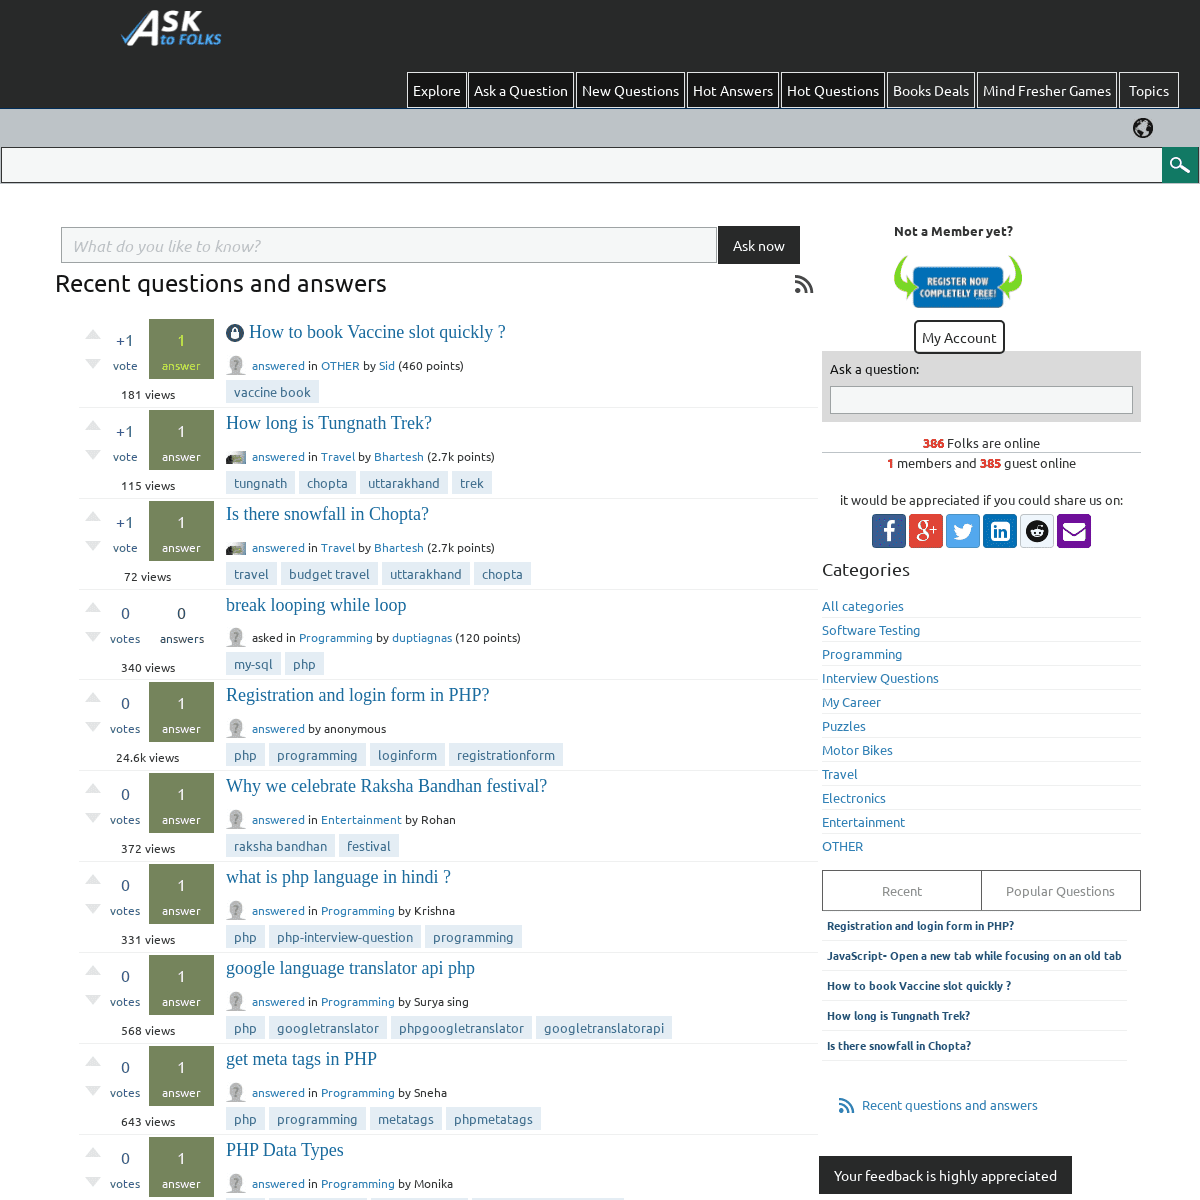 A complete backup of https://asktofolks.com